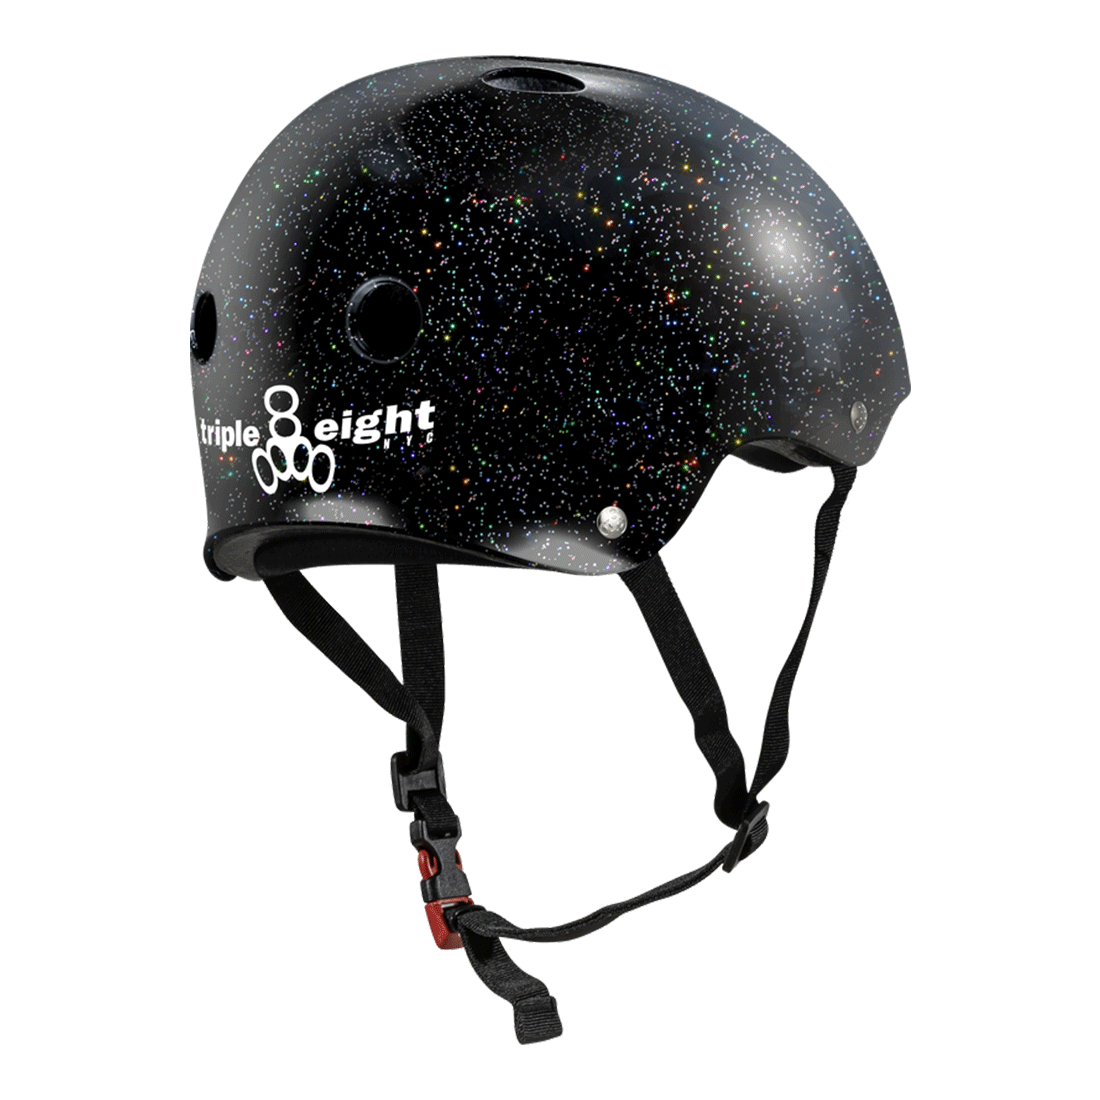 Triple 8 THE Cert SS Helmet - Black Glitter Helmets